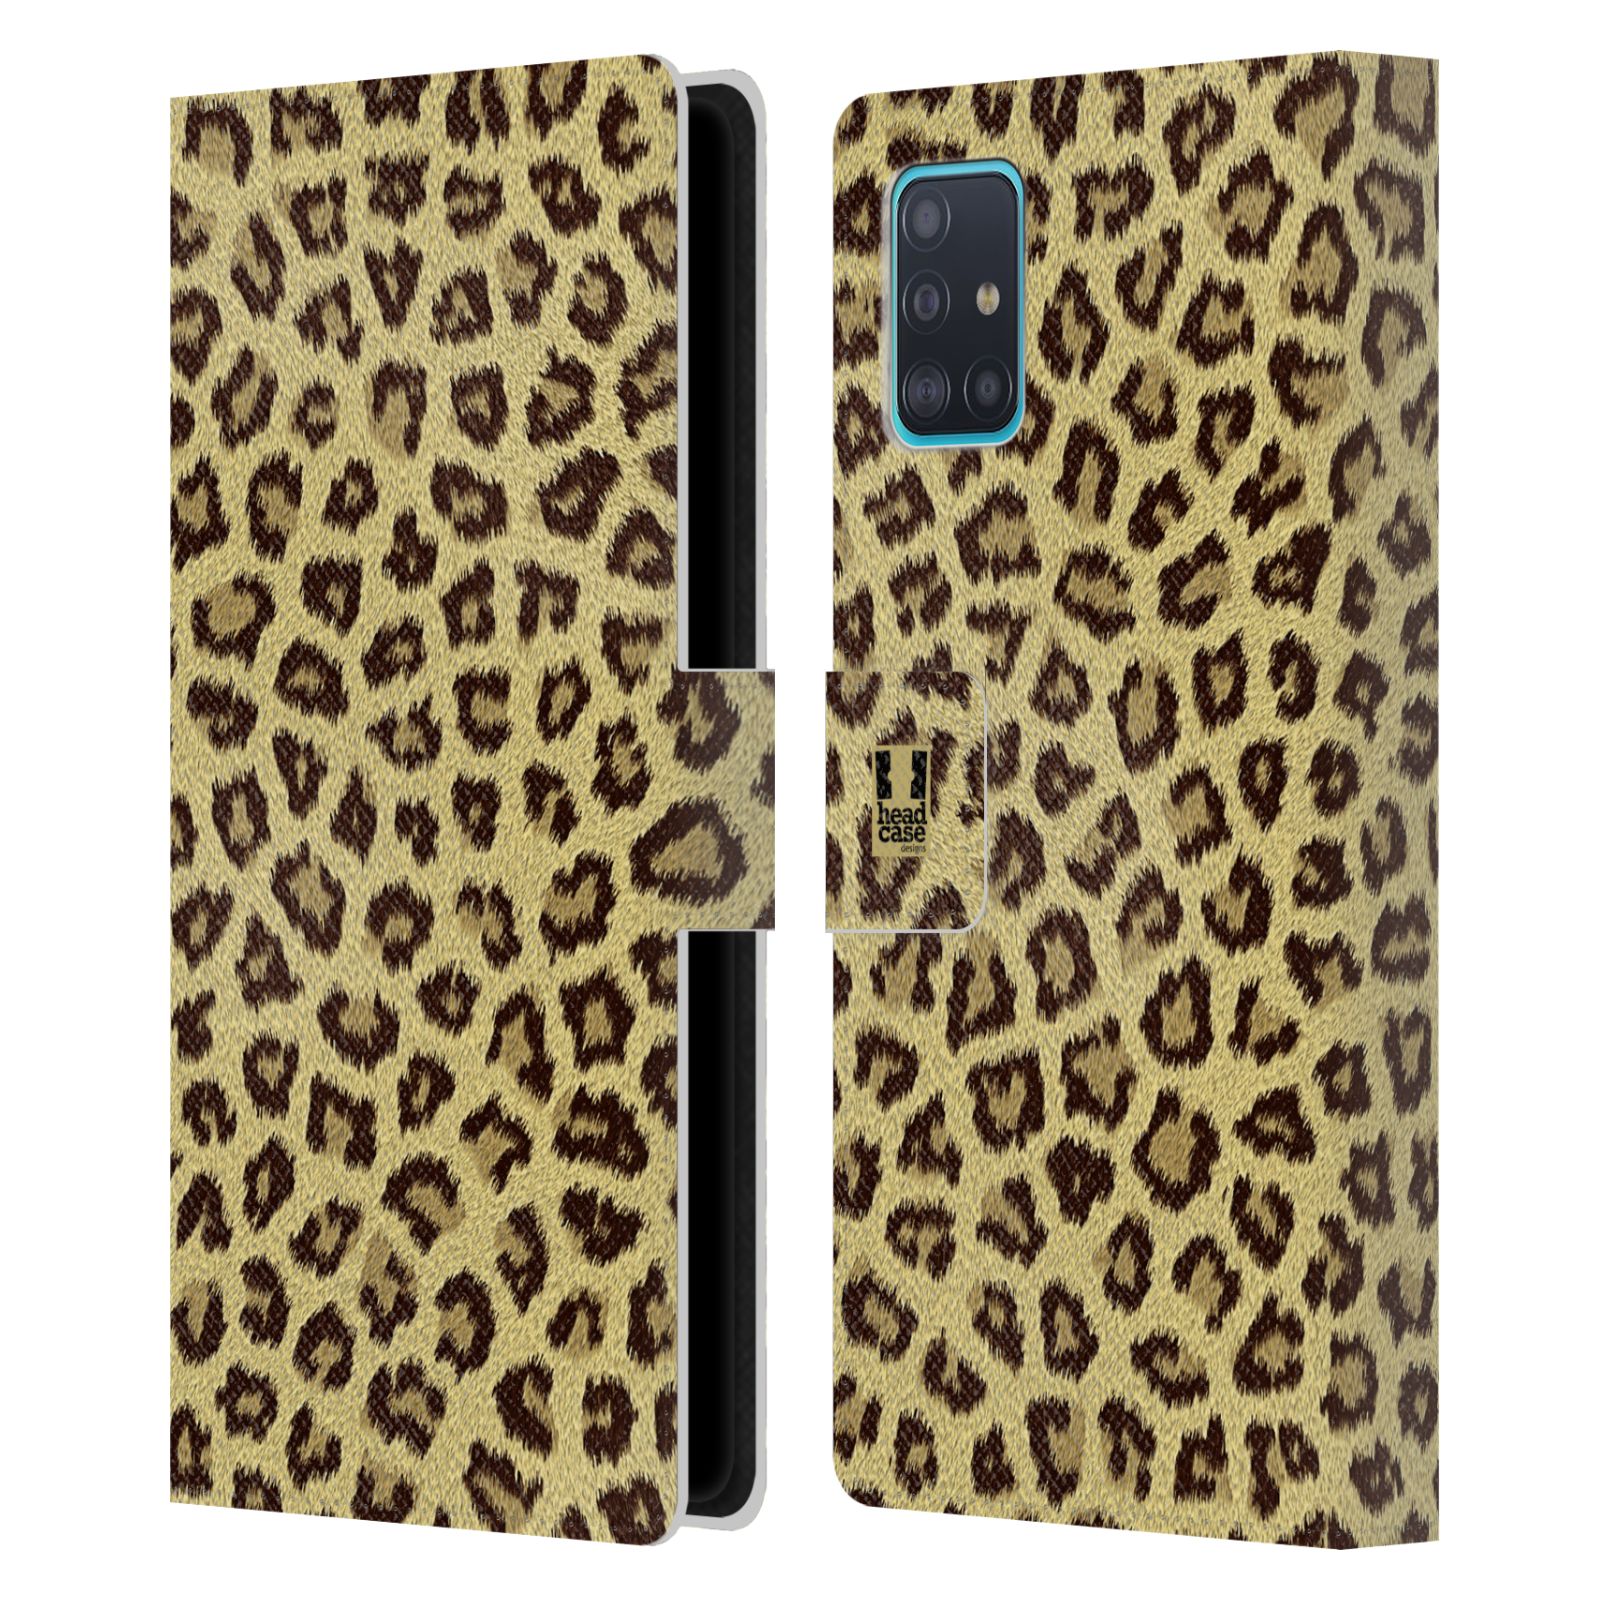 Pouzdro na mobil Samsung Galaxy A51 (A515F) zvíře srst divoká kolekce jaguár, gepard